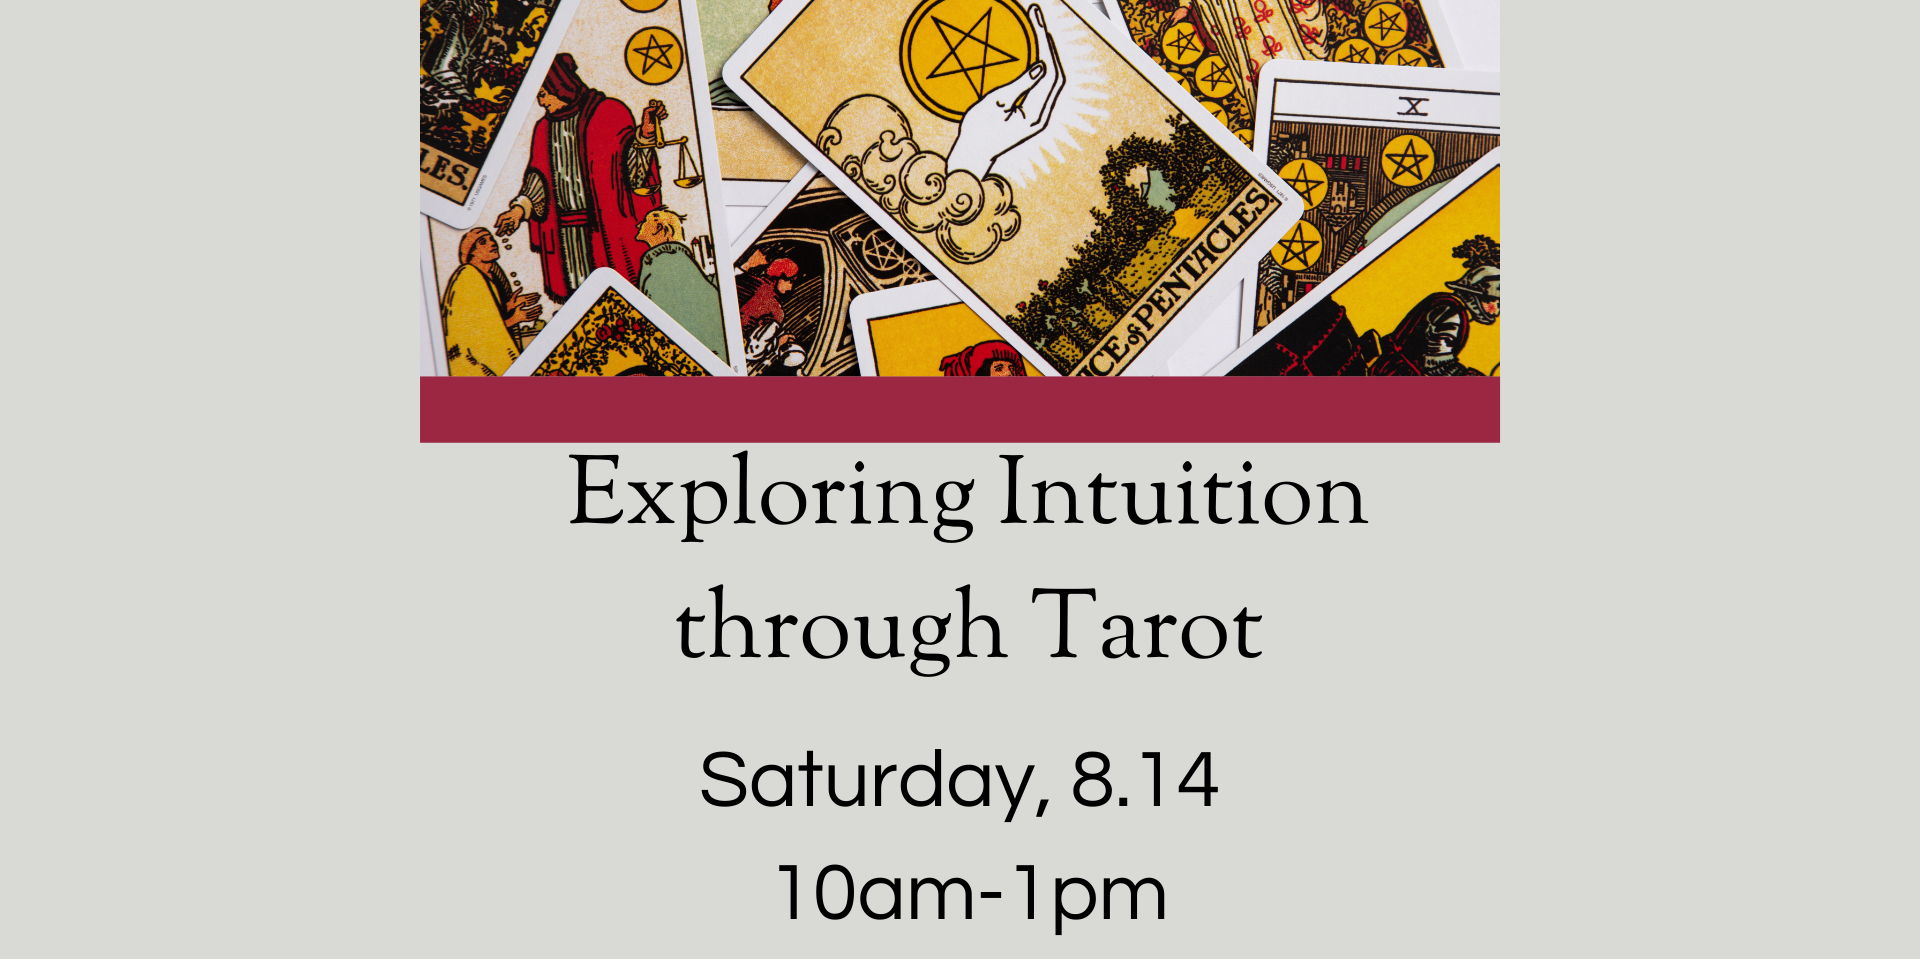 Exploring Intuition through Tarot promotional image